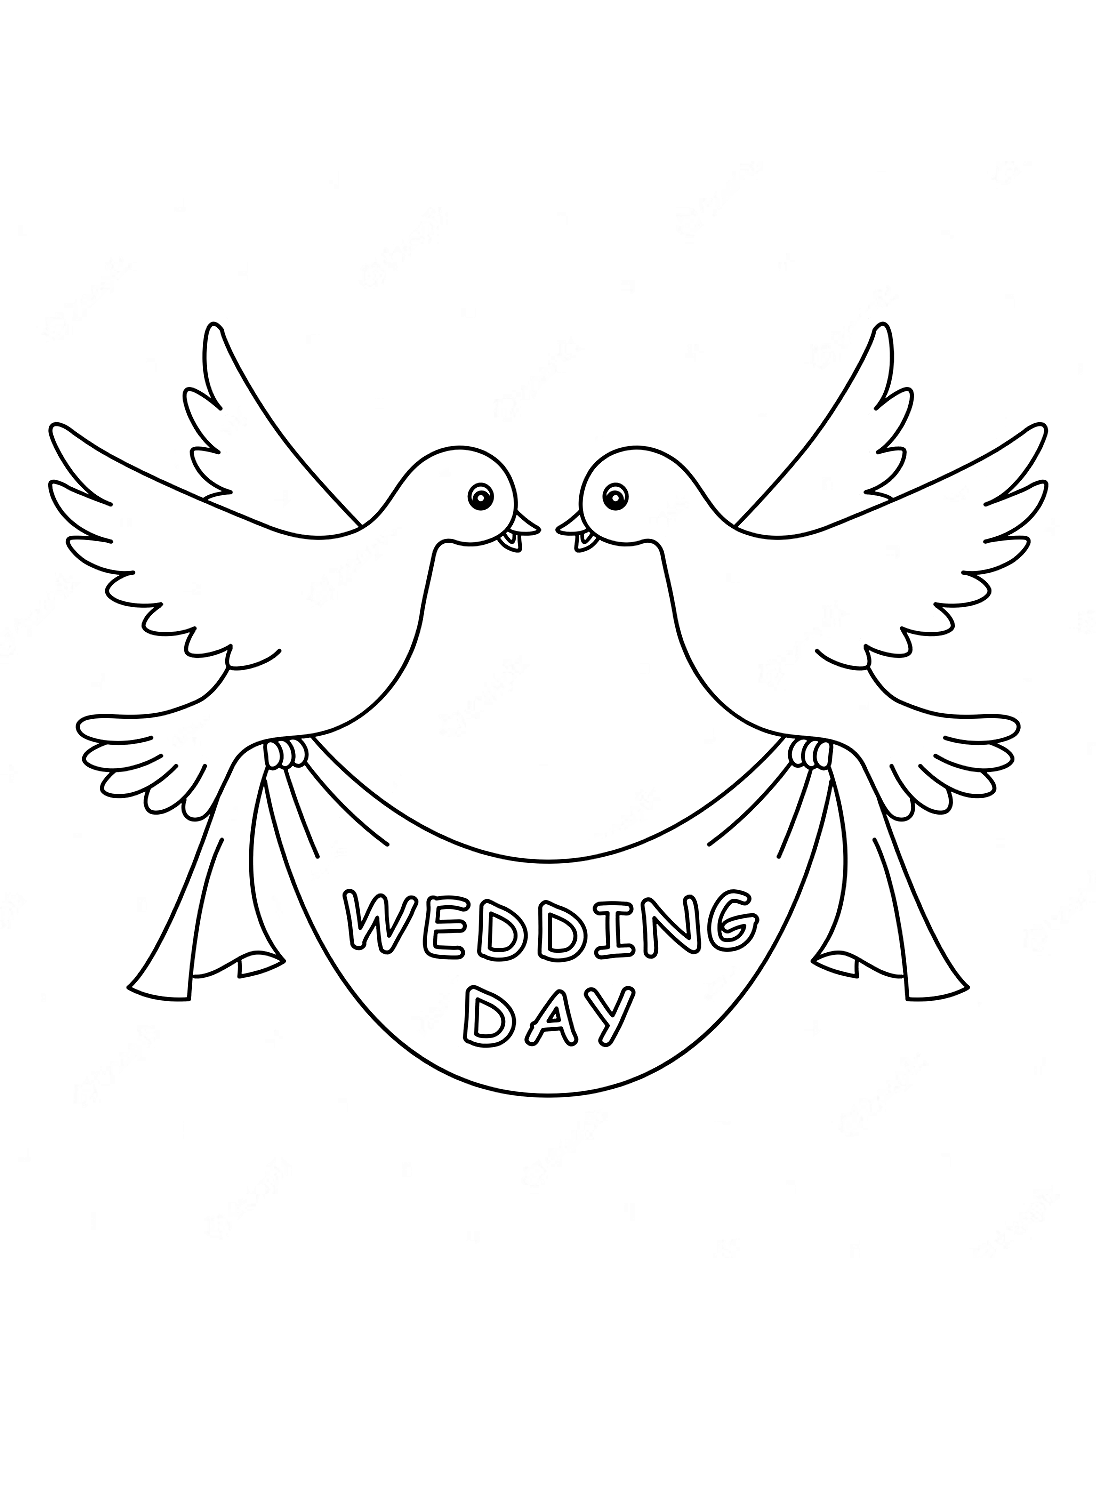 Een trouwdag en duiven van Doves